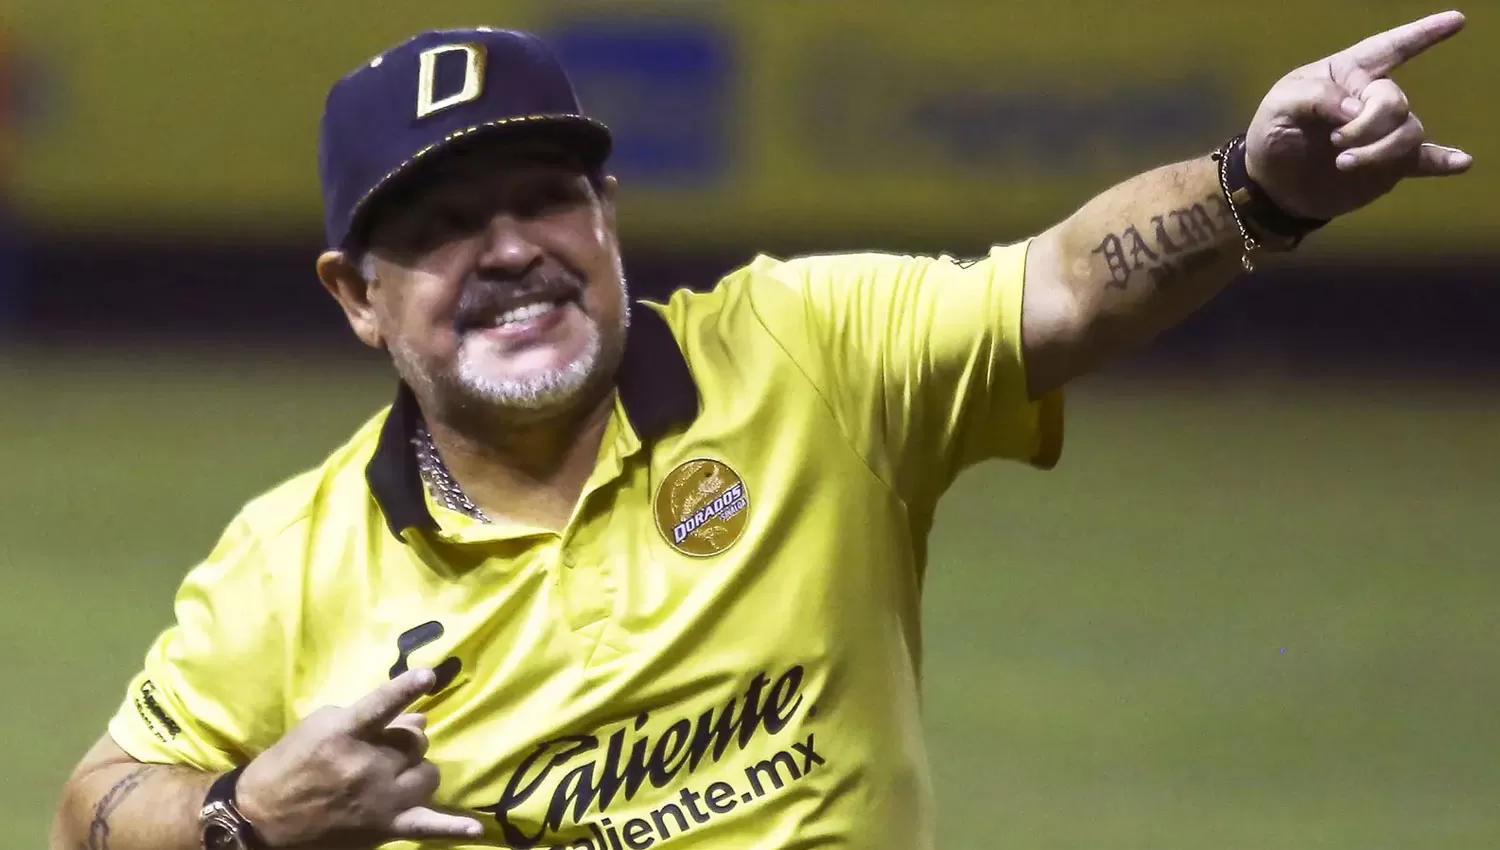 EN CARRERA. Maradona sacó al equipo de los puestos del descenso y sueña con llevarlo a Primera.